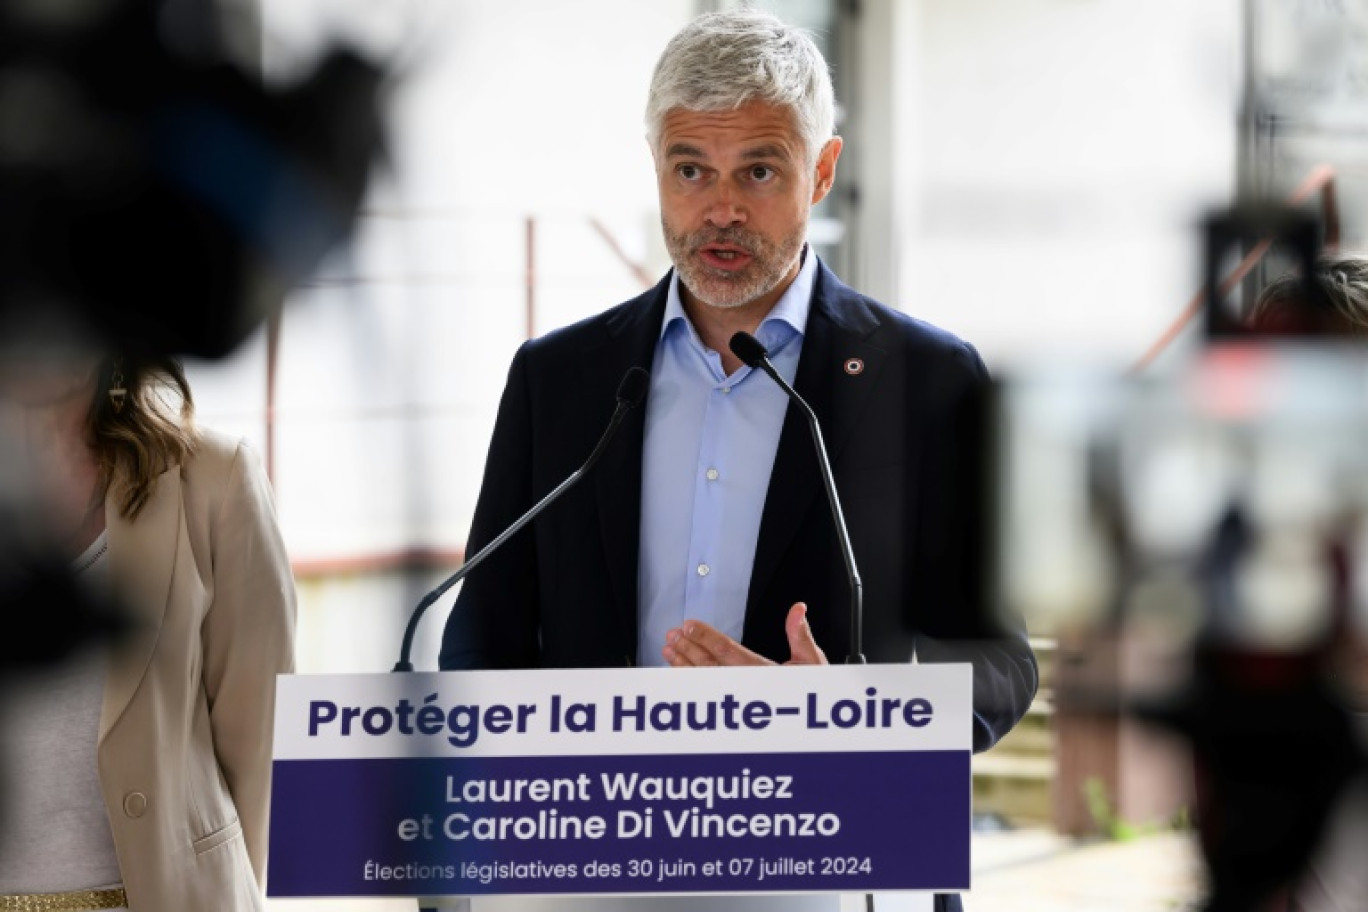 Le président du conseil régional Auvergne-Rhône-Alpes, Laurent Wauquiez, tient une conférence de presse à Yssingeaux, dans la Haute-Loire, le 11 juin 2024 © JEAN-PHILIPPE KSIAZEK